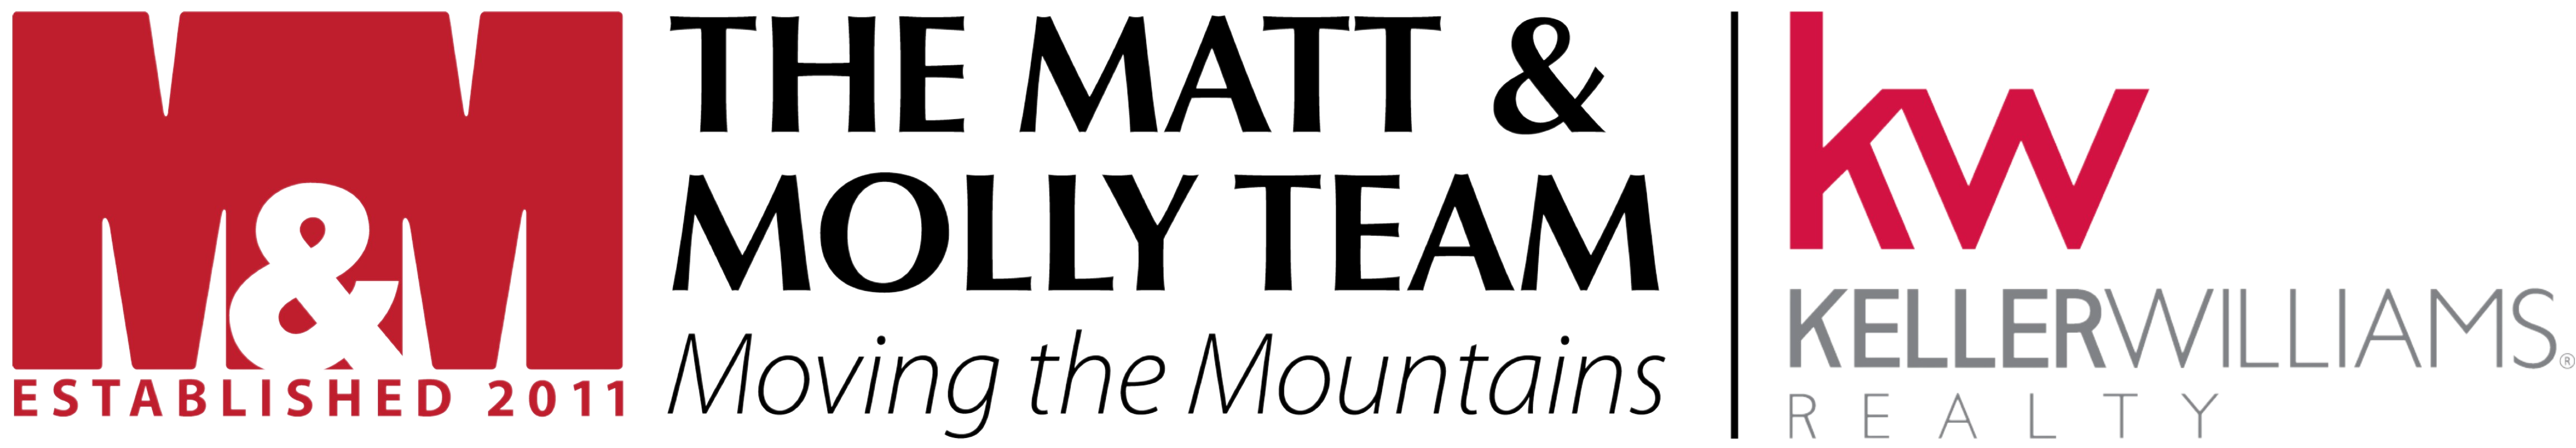 The Matt & Molly Team